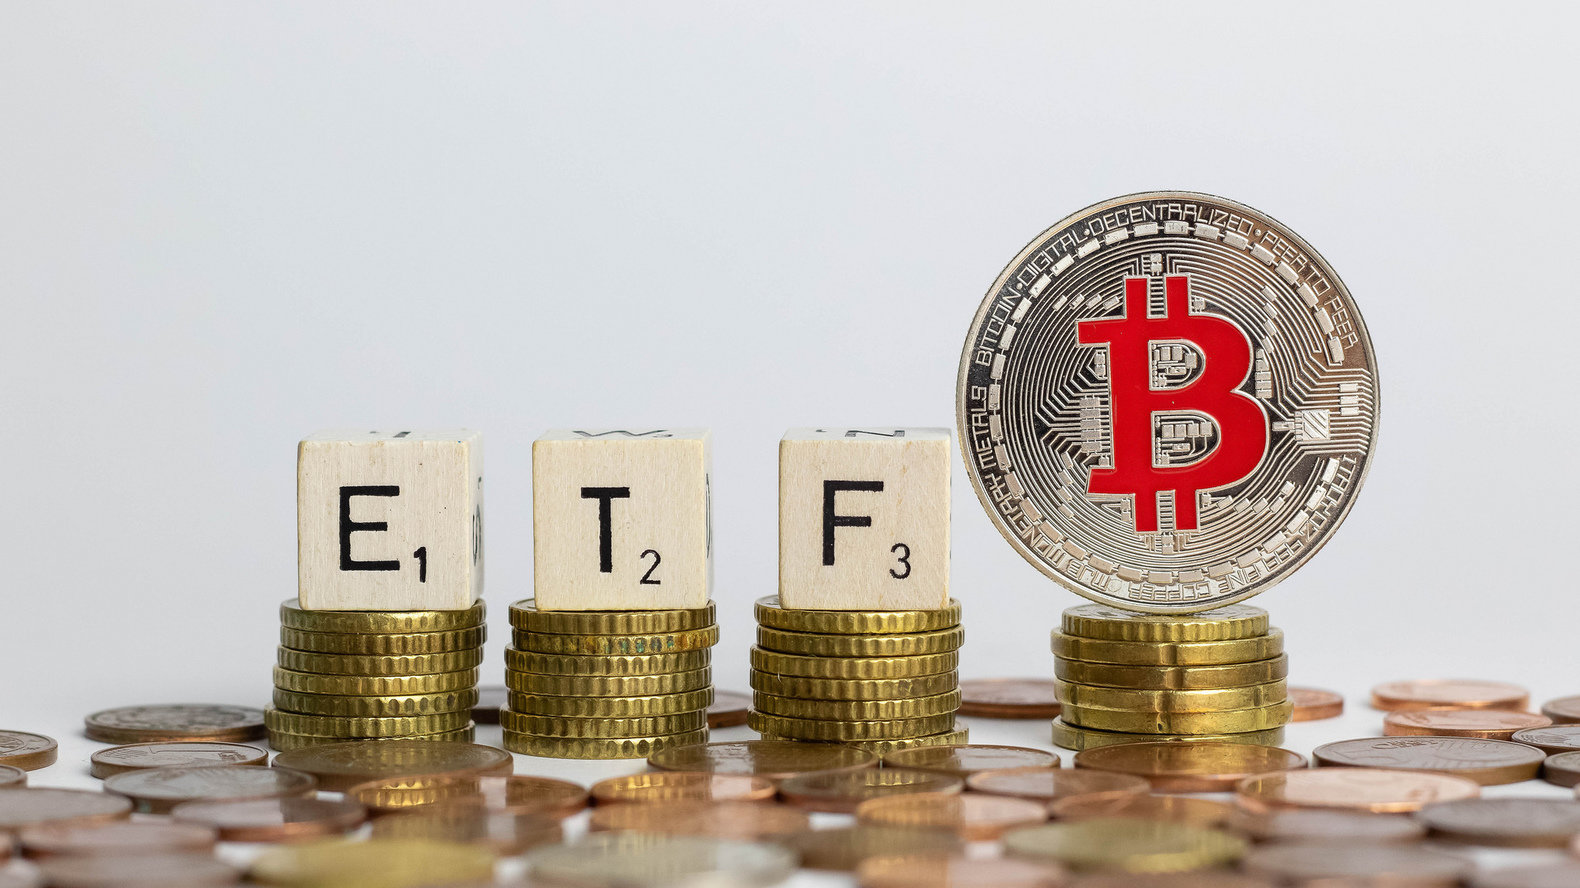 قامت هيئة الأوراق المالية والبورصات (SEC) مرة أخرى بتأجيل اتخاذ قرار بشأن صندوق Bitcoin ETF الذي طال انتظاره